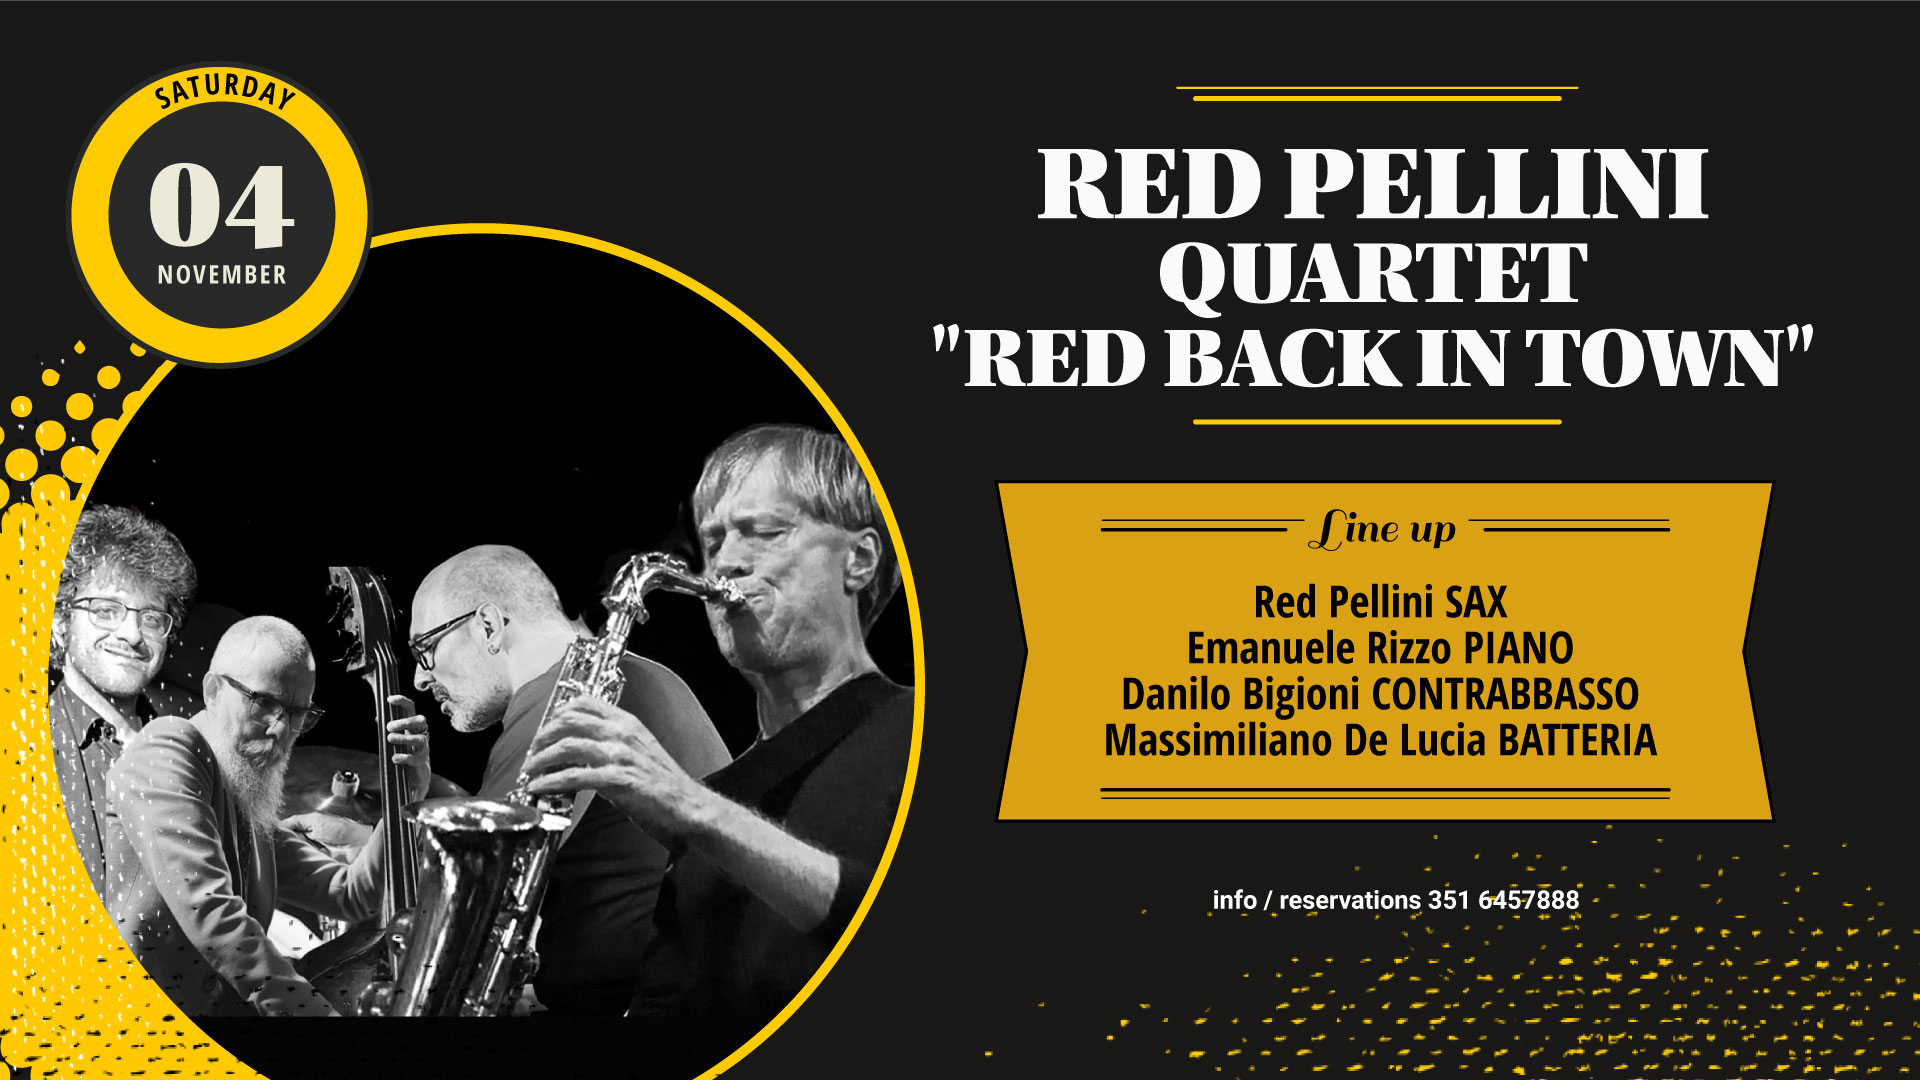 Red Pellini Quartet